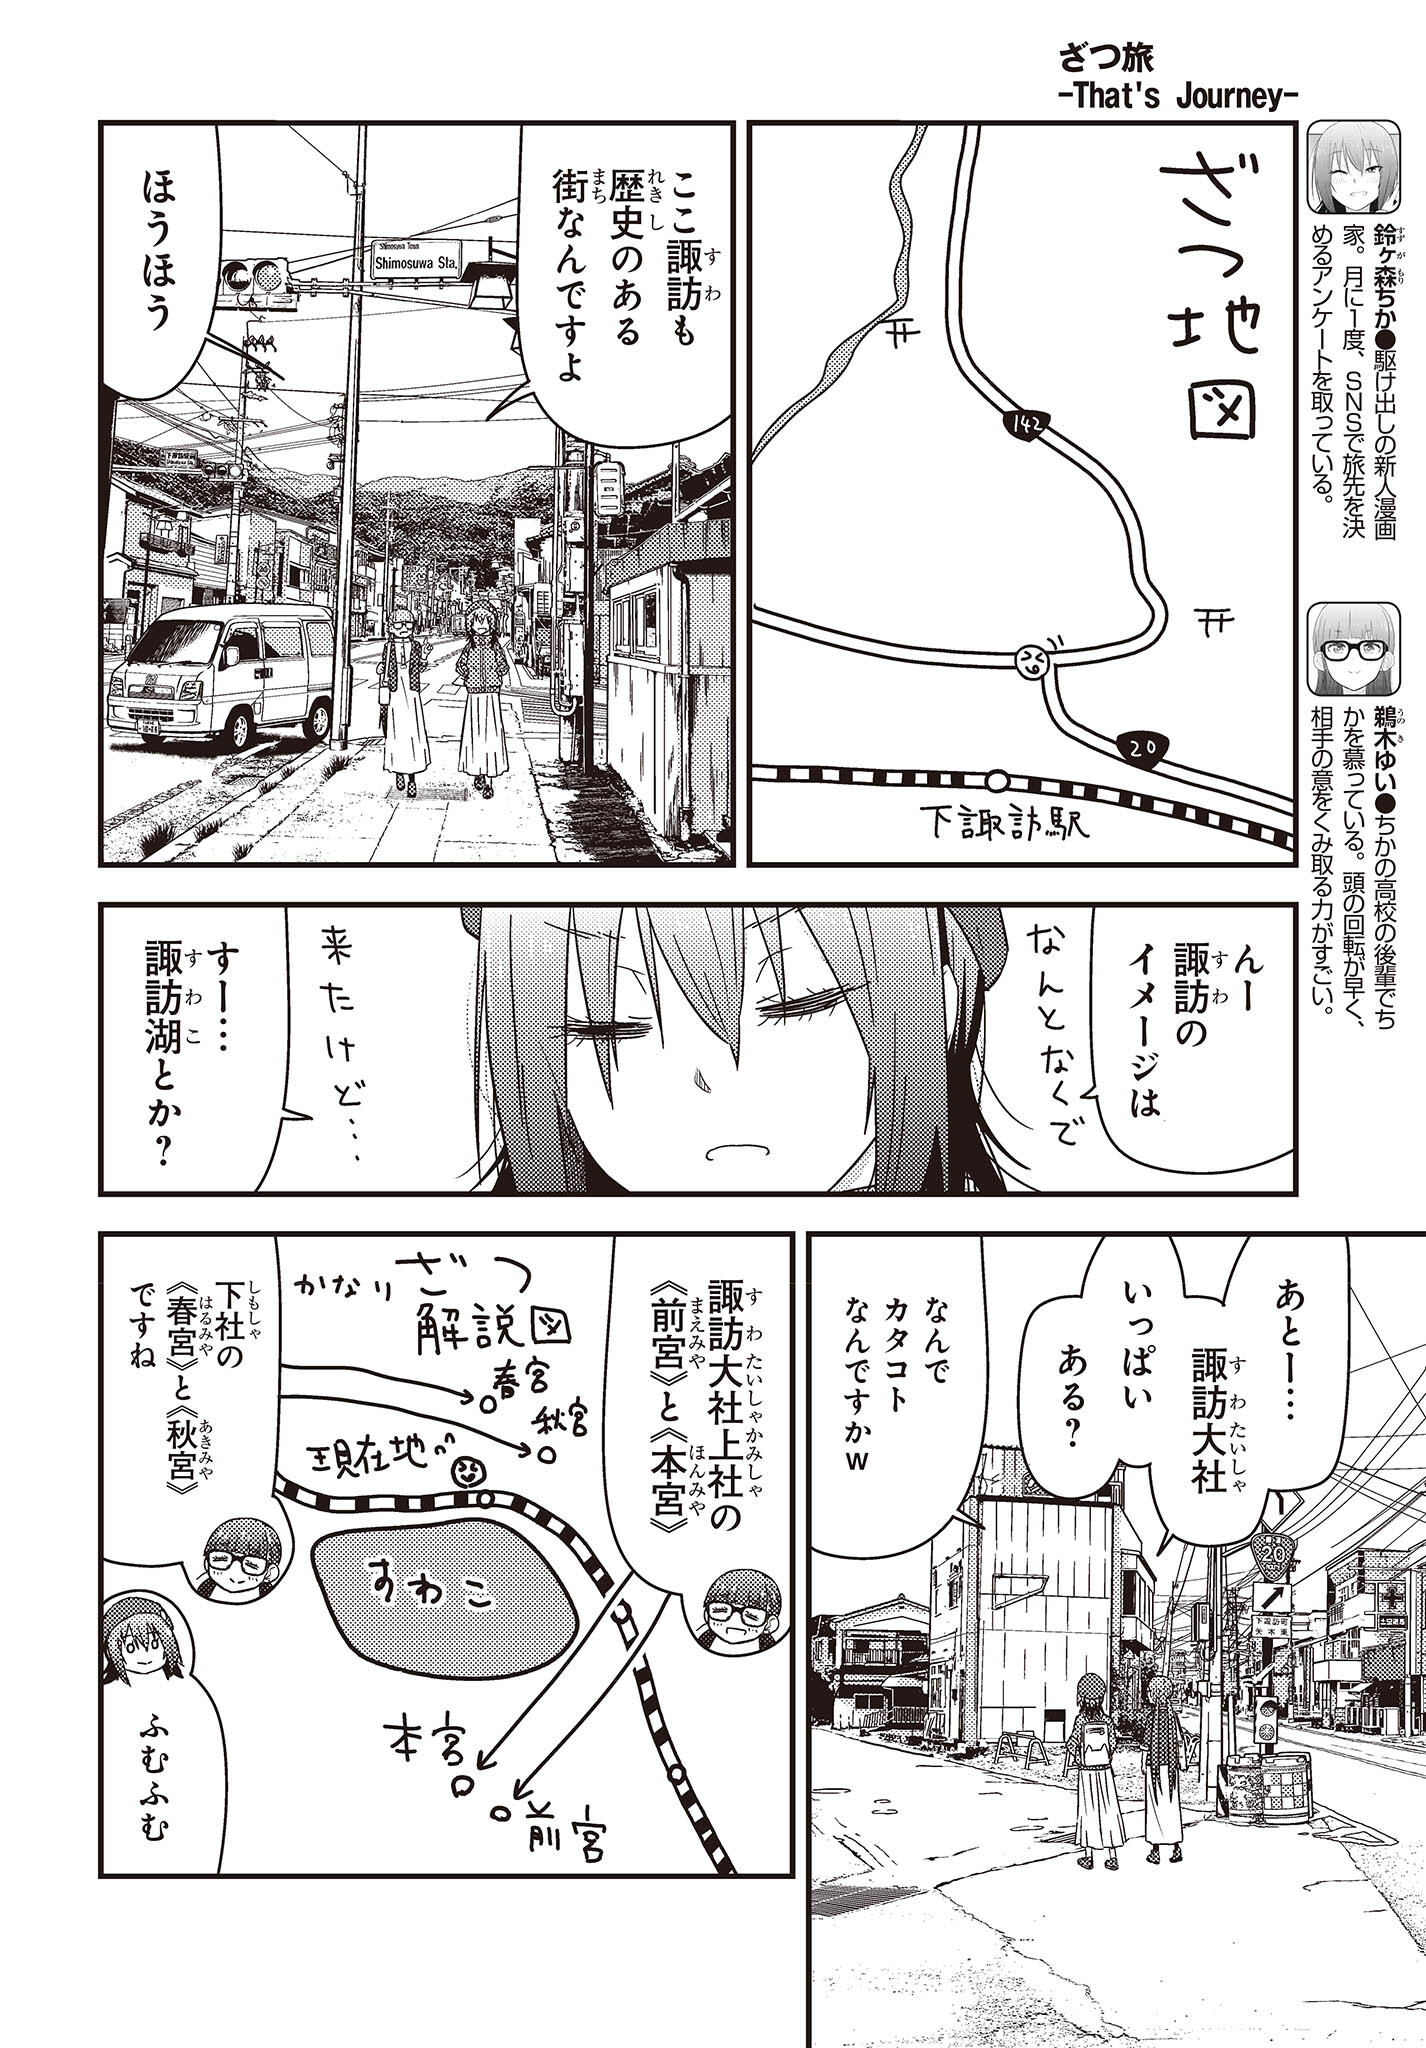 ざつ旅–That?s Journey– 第28話 - Page 4